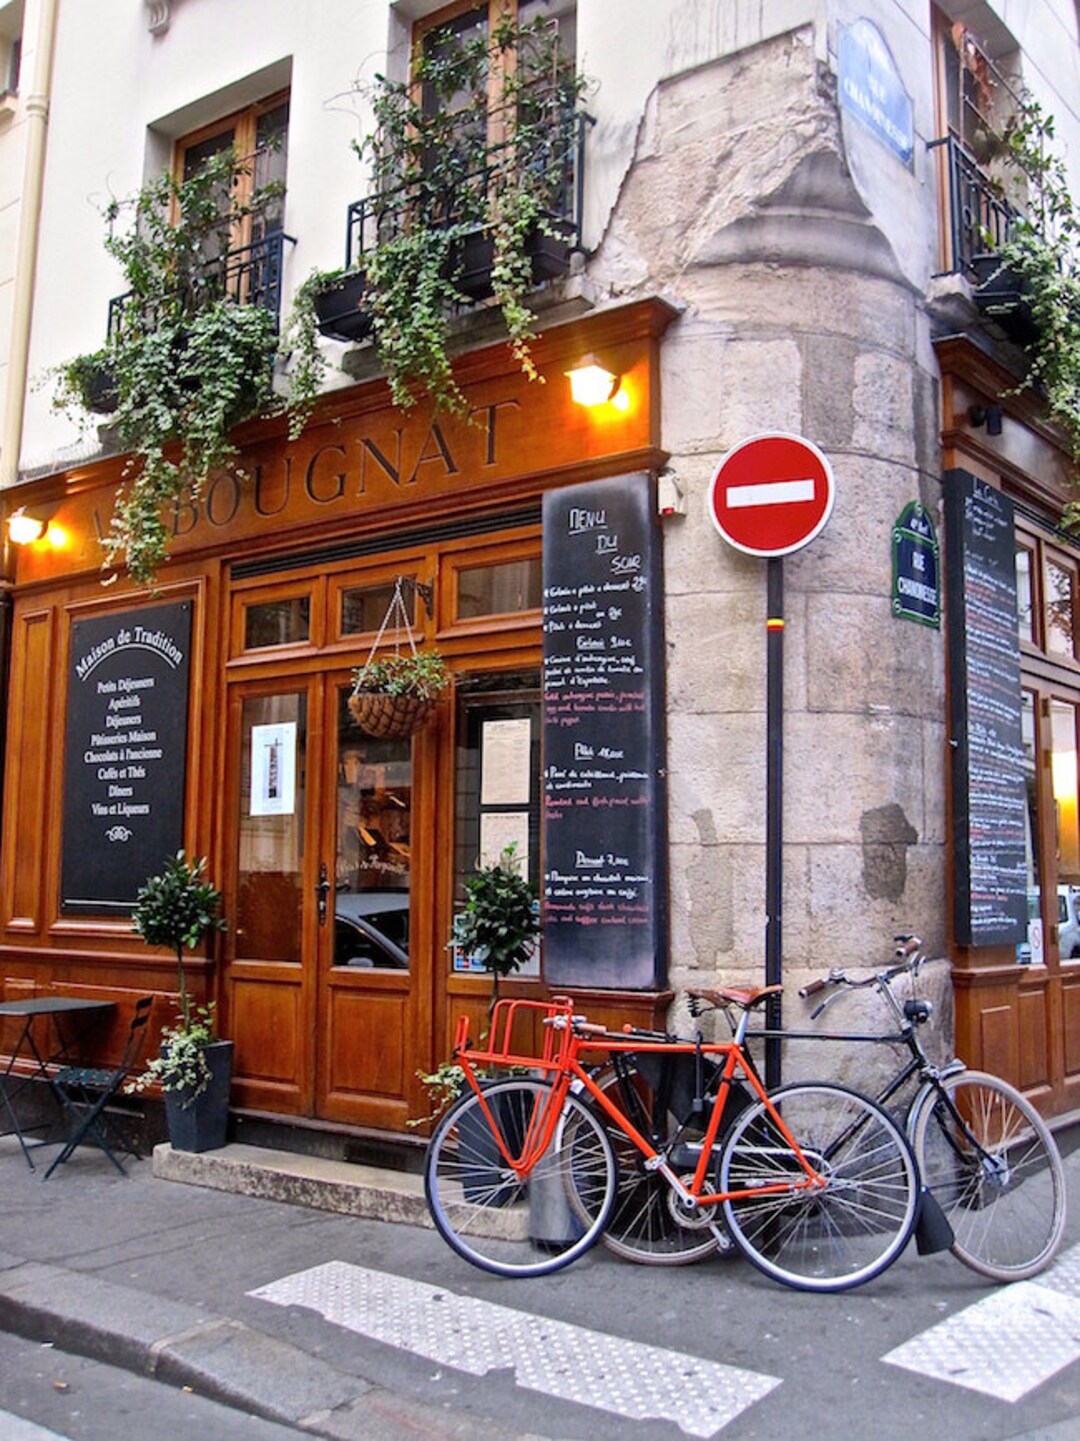 Au Bougnat Photo, Paris Restaurant, Bicycle Photo Fine Art Paris